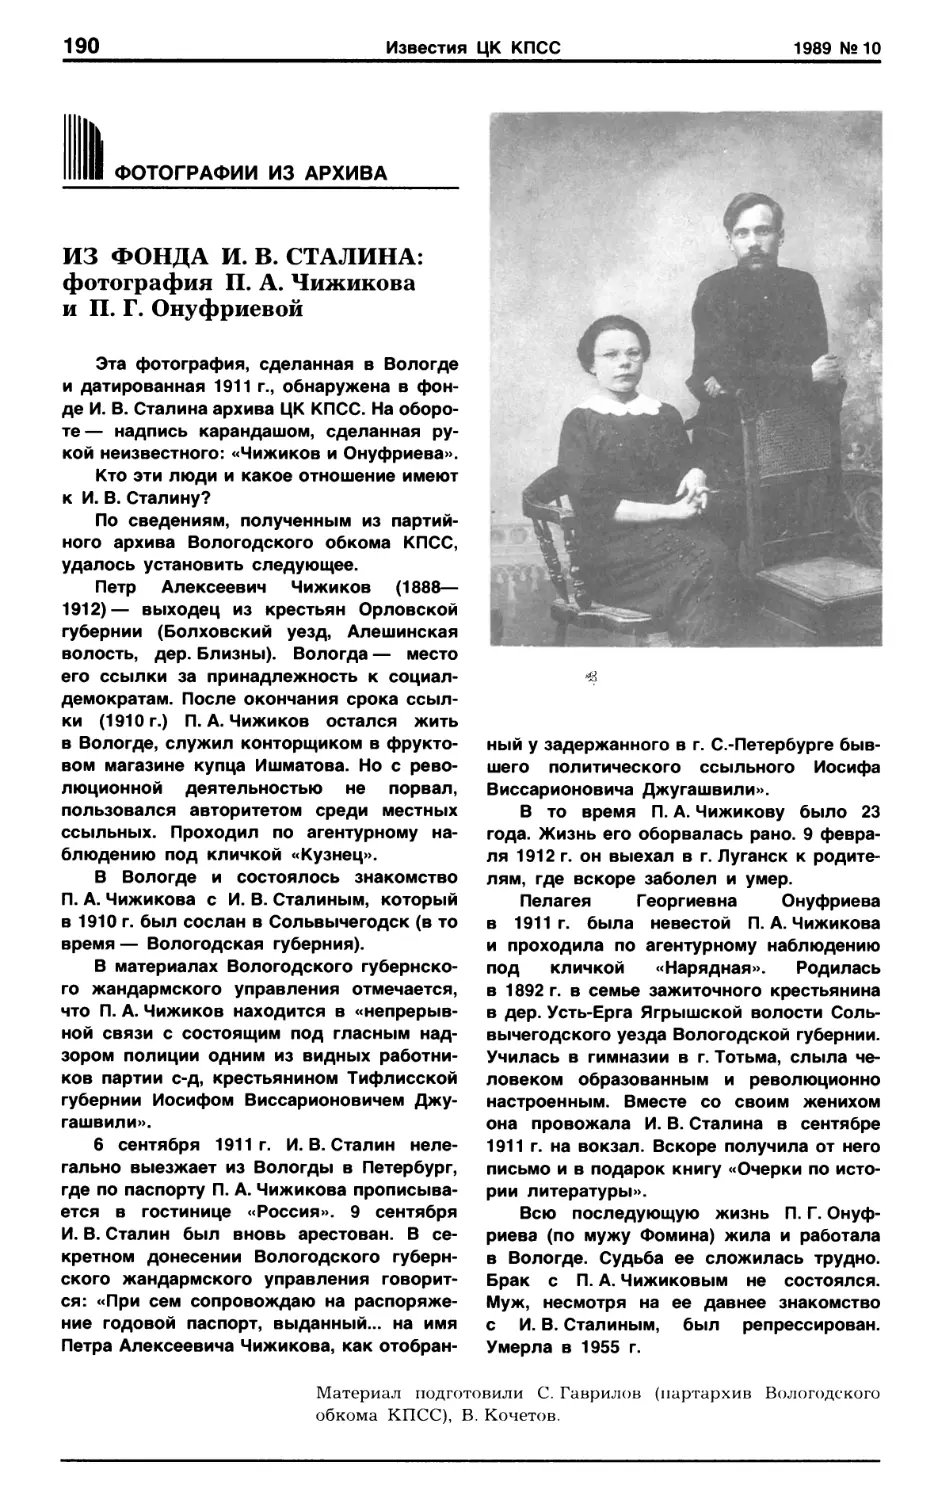 Из фонда И.В. Сталина: фотография П.А. Чижикова и П.Г. Онуфриевой